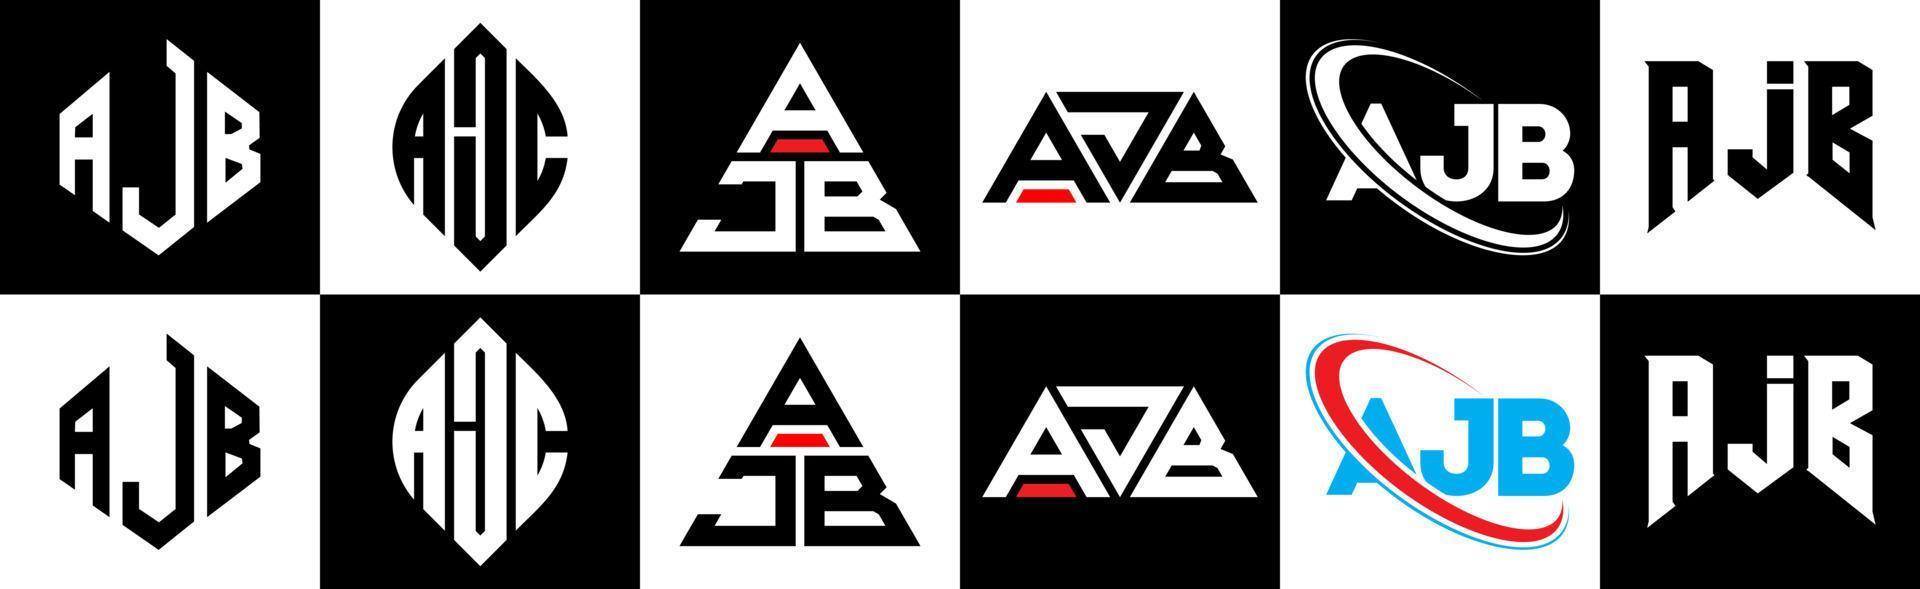 création de logo de lettre ajb en six styles. polygone ajb, cercle, triangle, hexagone, style plat et simple avec logo de lettre de variation de couleur noir et blanc dans un plan de travail. logo ajb minimaliste et classique vecteur